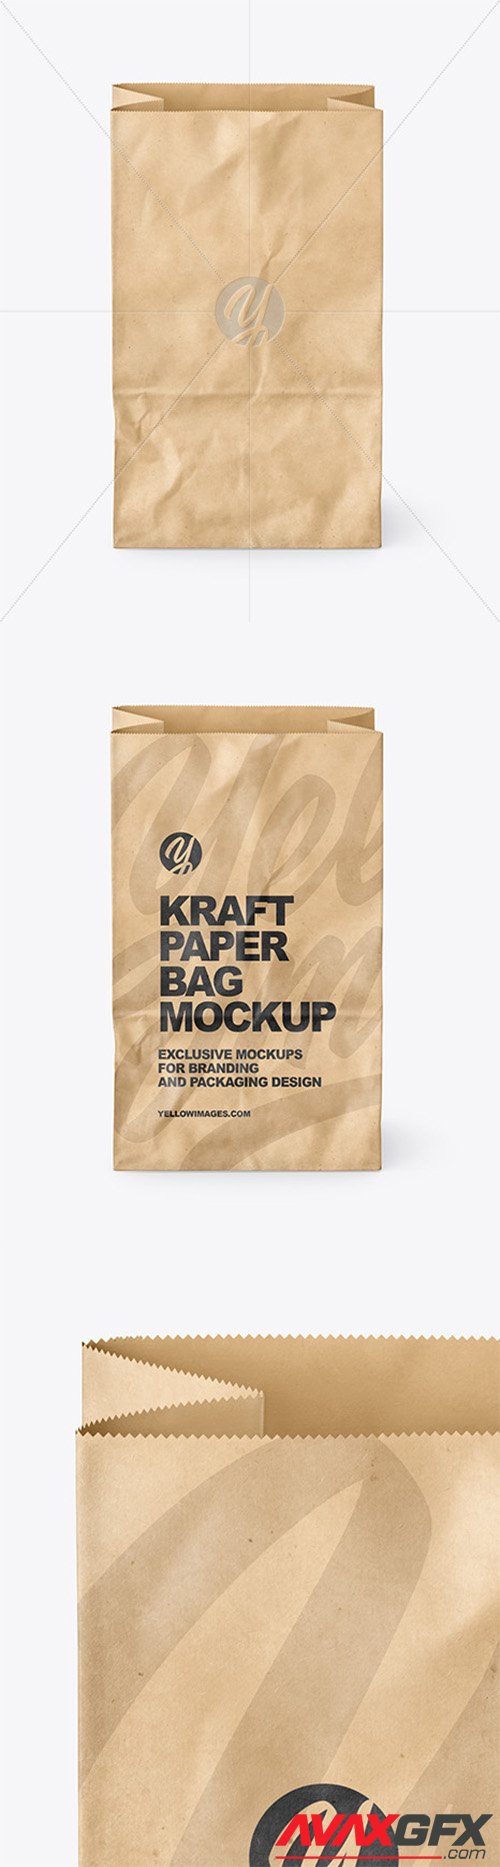 Kraft Paper Bag Mockup 80685